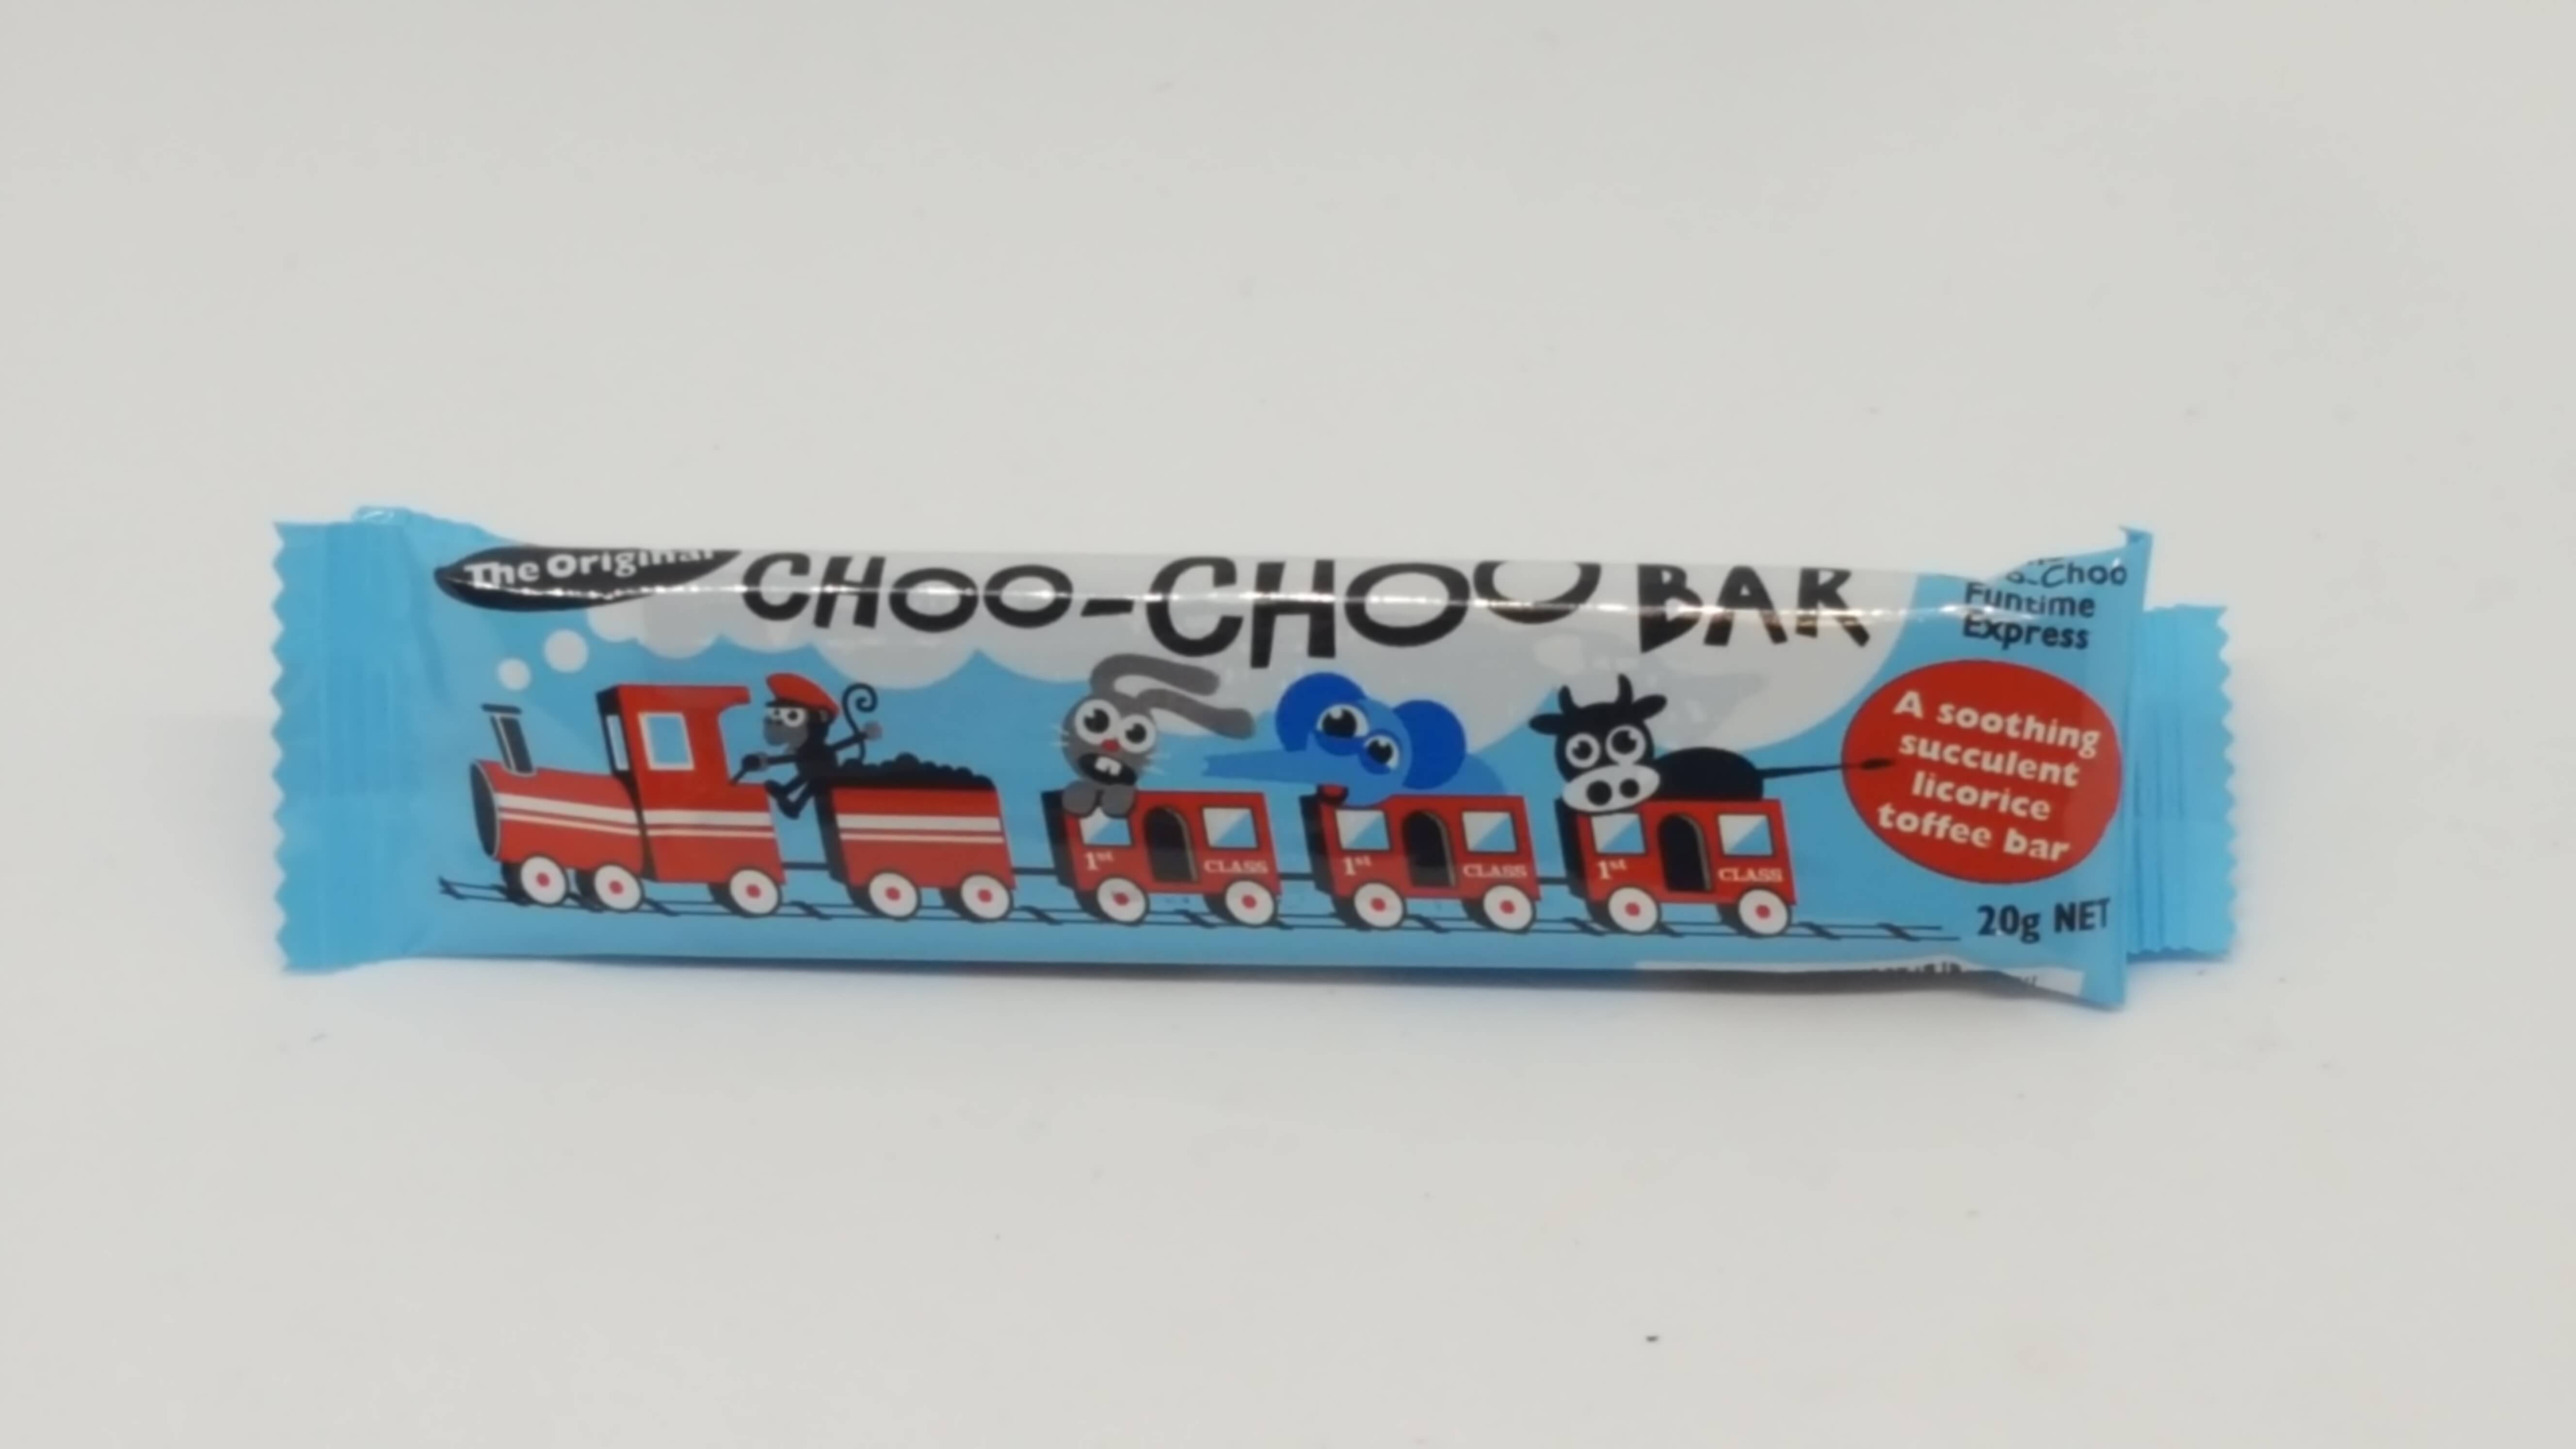 Choo-Choo bar 3x20g bars